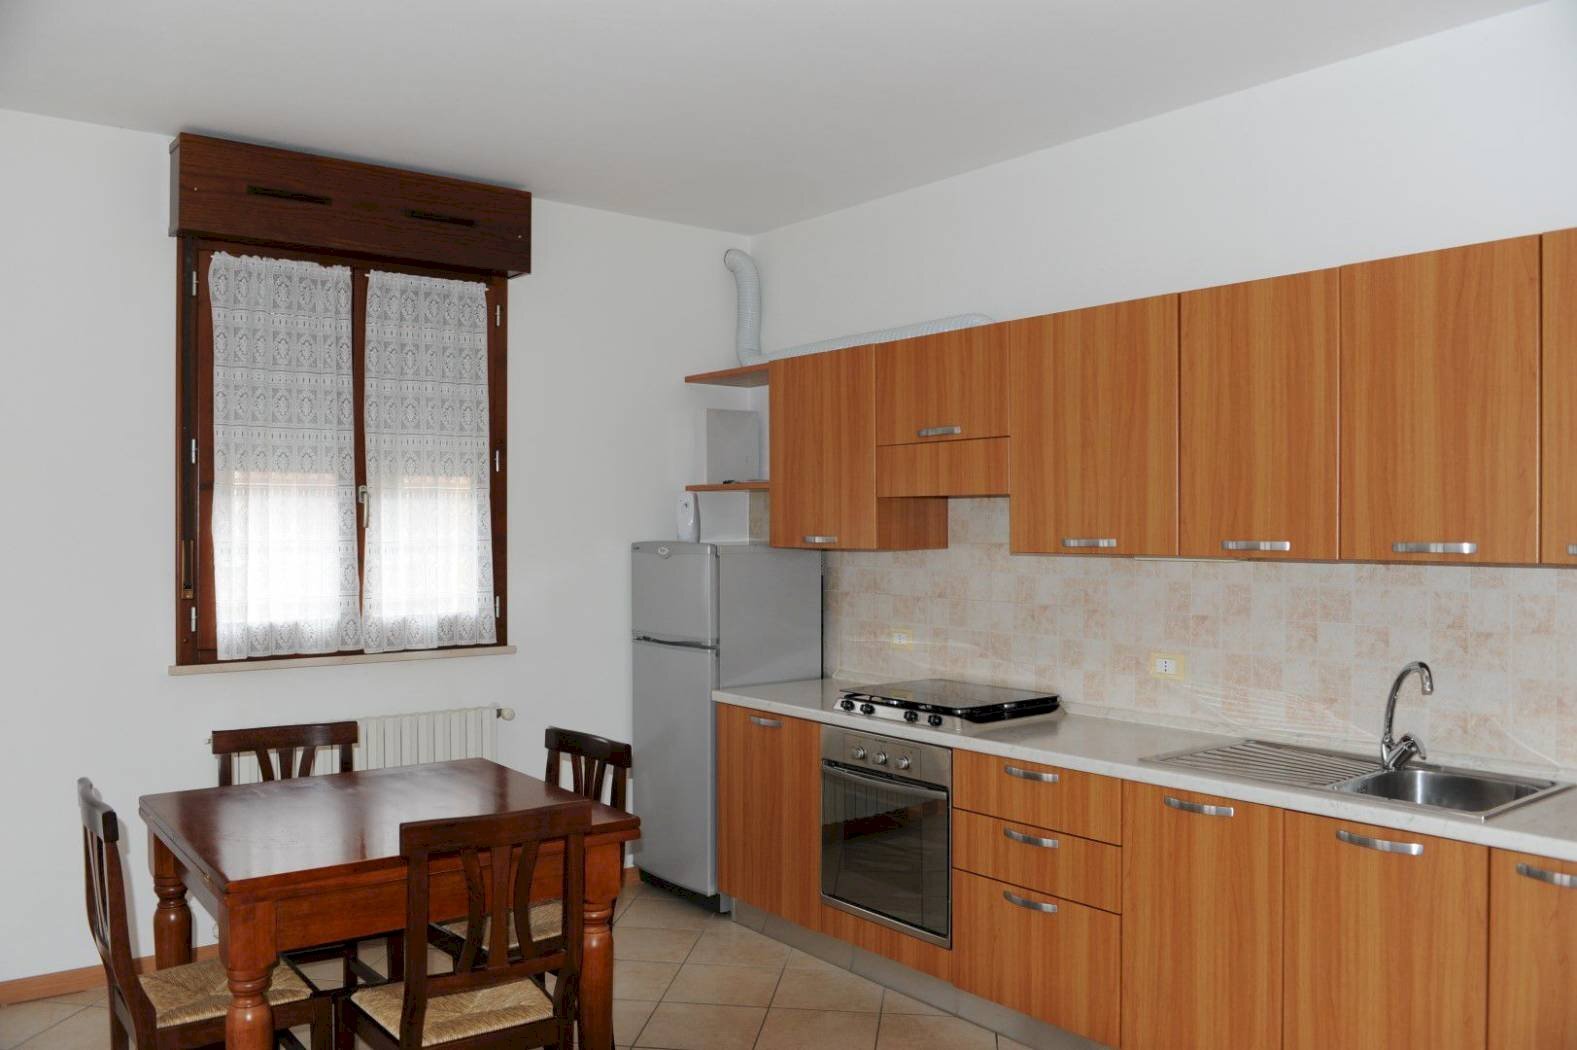 Appartamento in vendita a Castel Bolognese, 1 locali, prezzo € 120.000 | CambioCasa.it